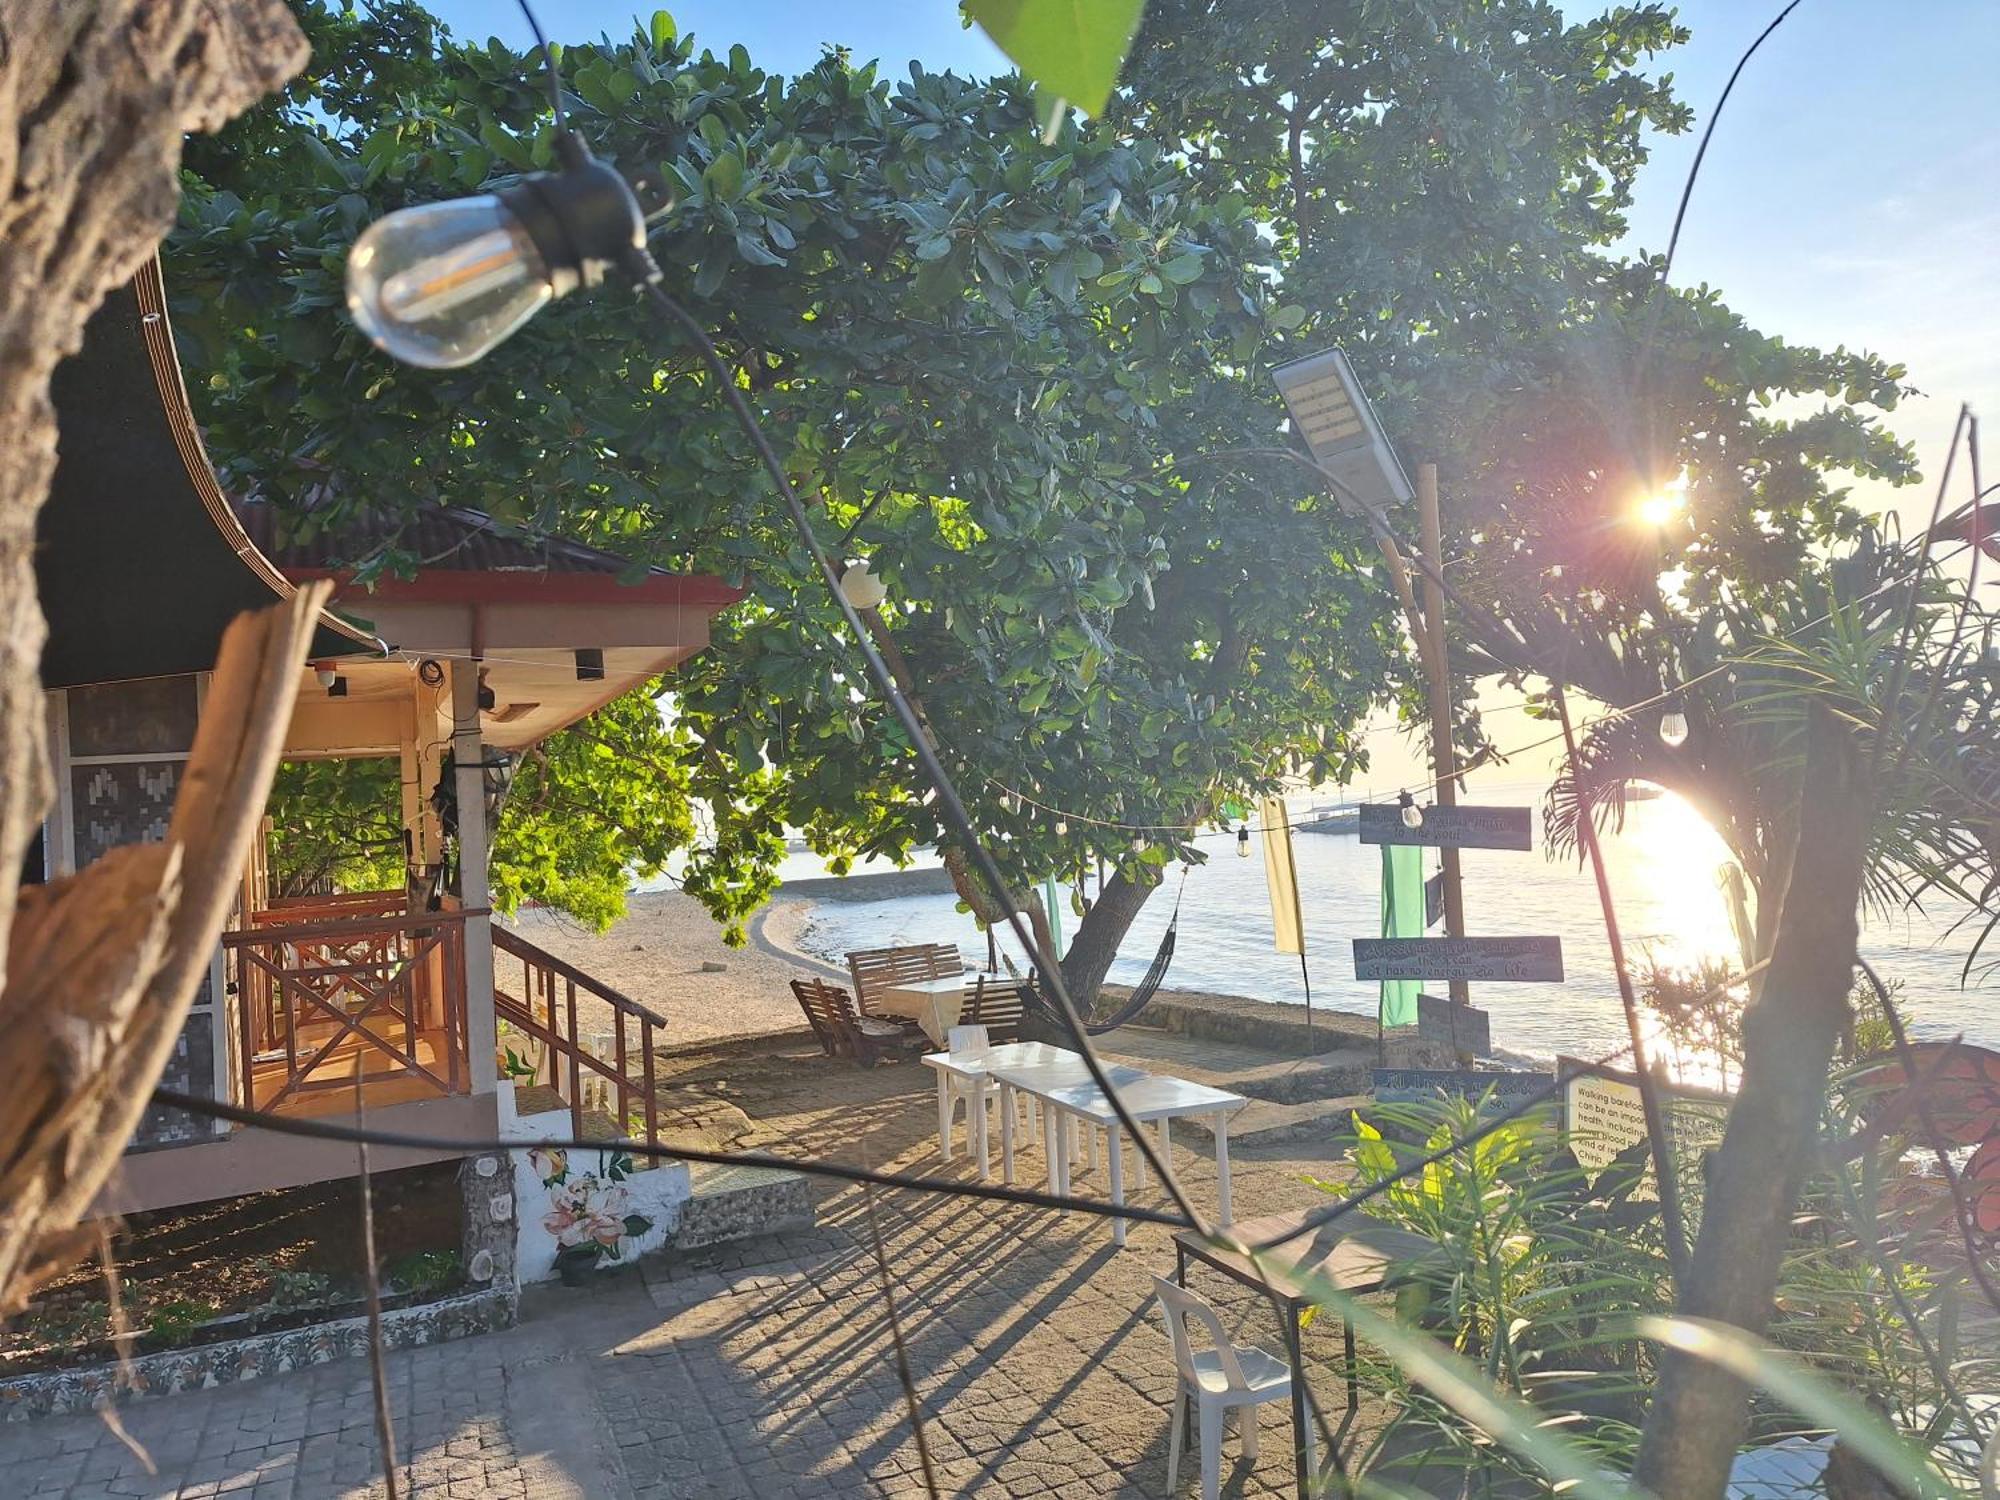 Island Front - Bangcogon Resort And Restaurant Oslob Zewnętrze zdjęcie